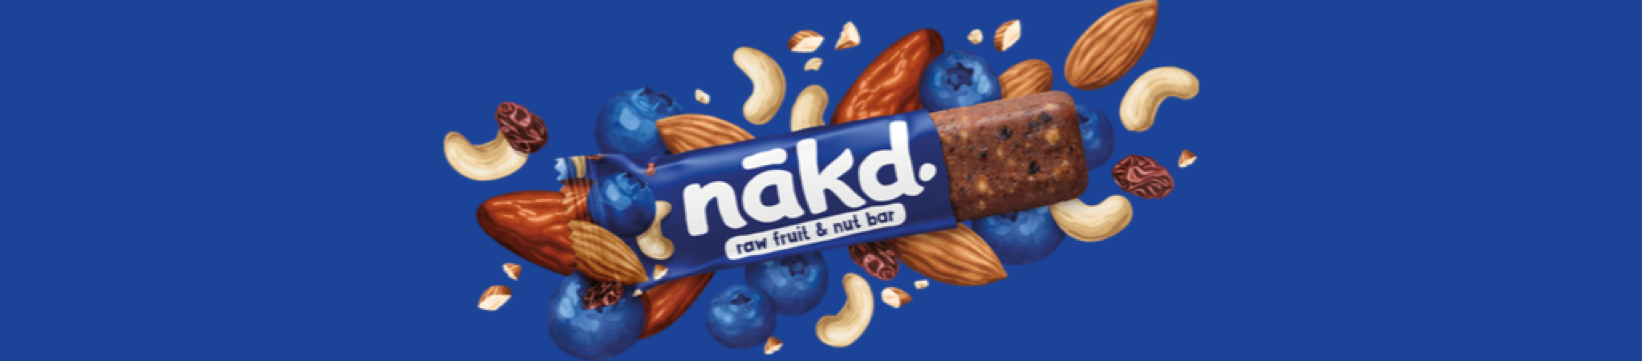 nakd bars, nakd,